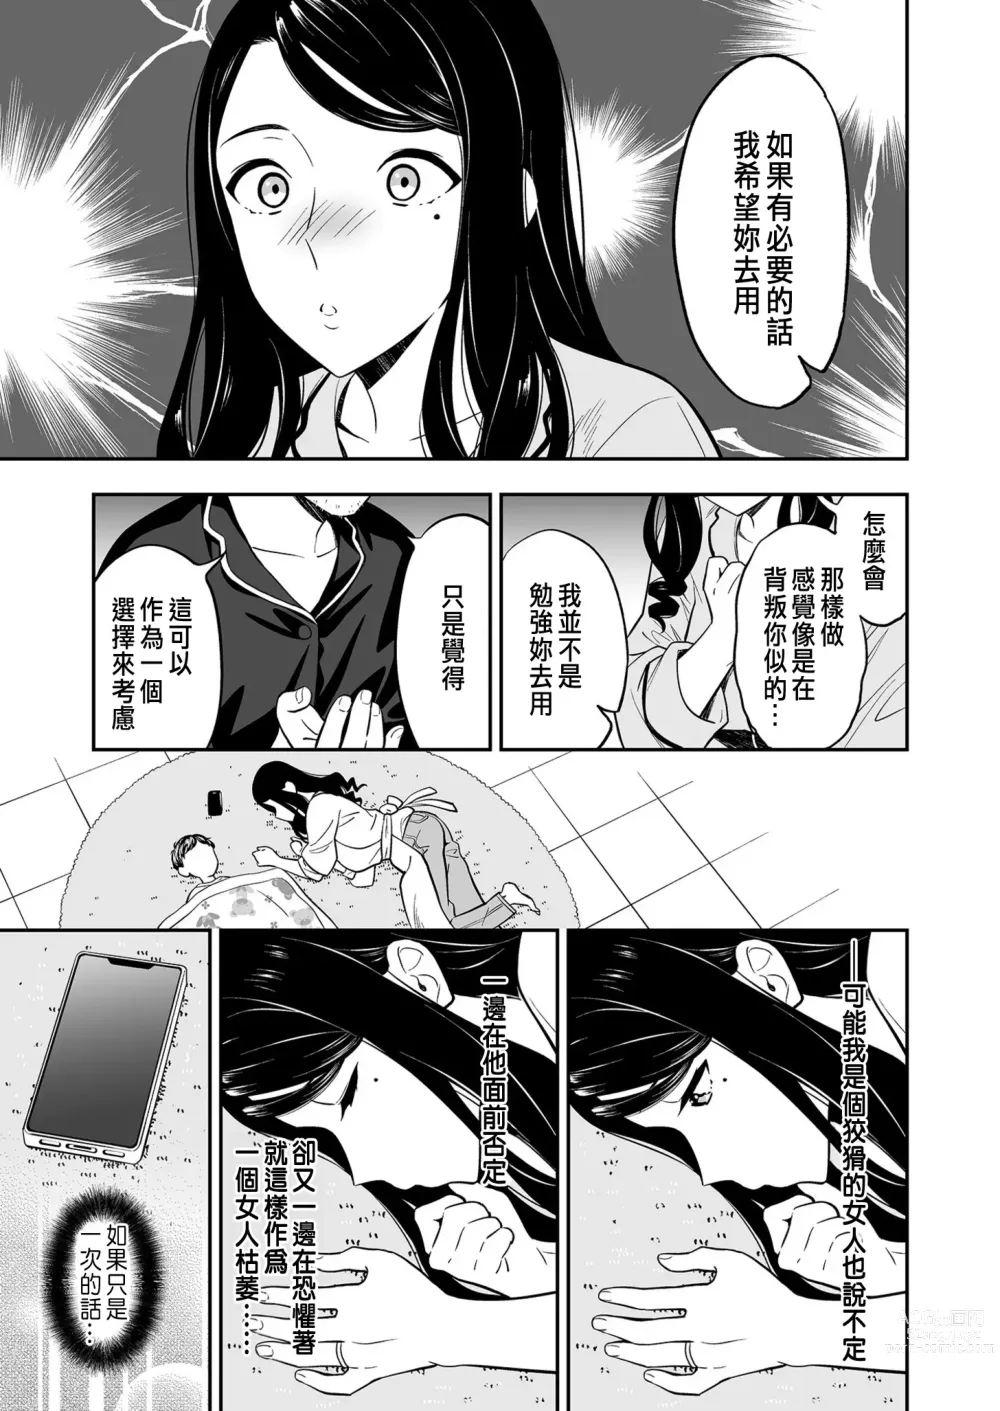 Page 13 of manga Suki nano wa Anata dake... 1